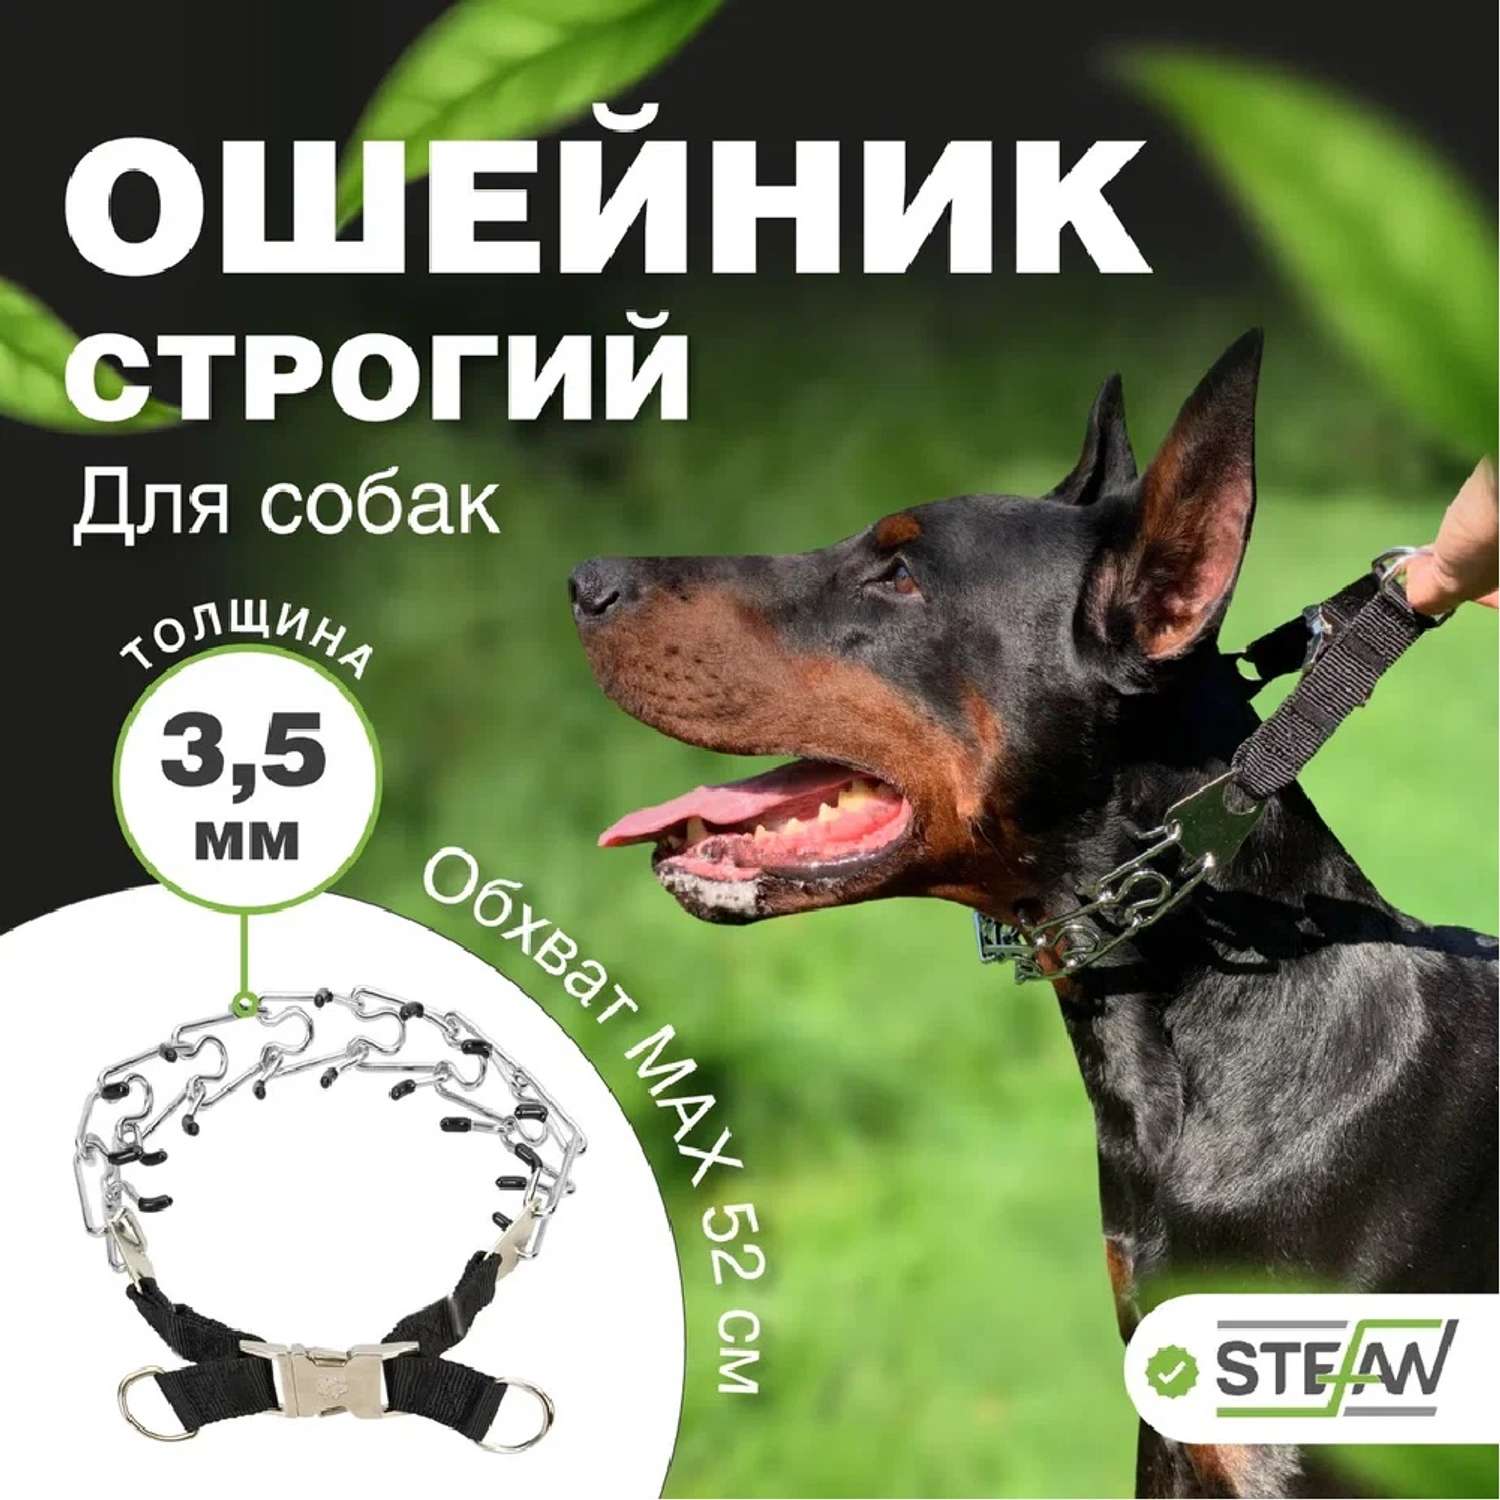 Ошейник для собак Stefan строгий XL 4.0X60 - фото 1